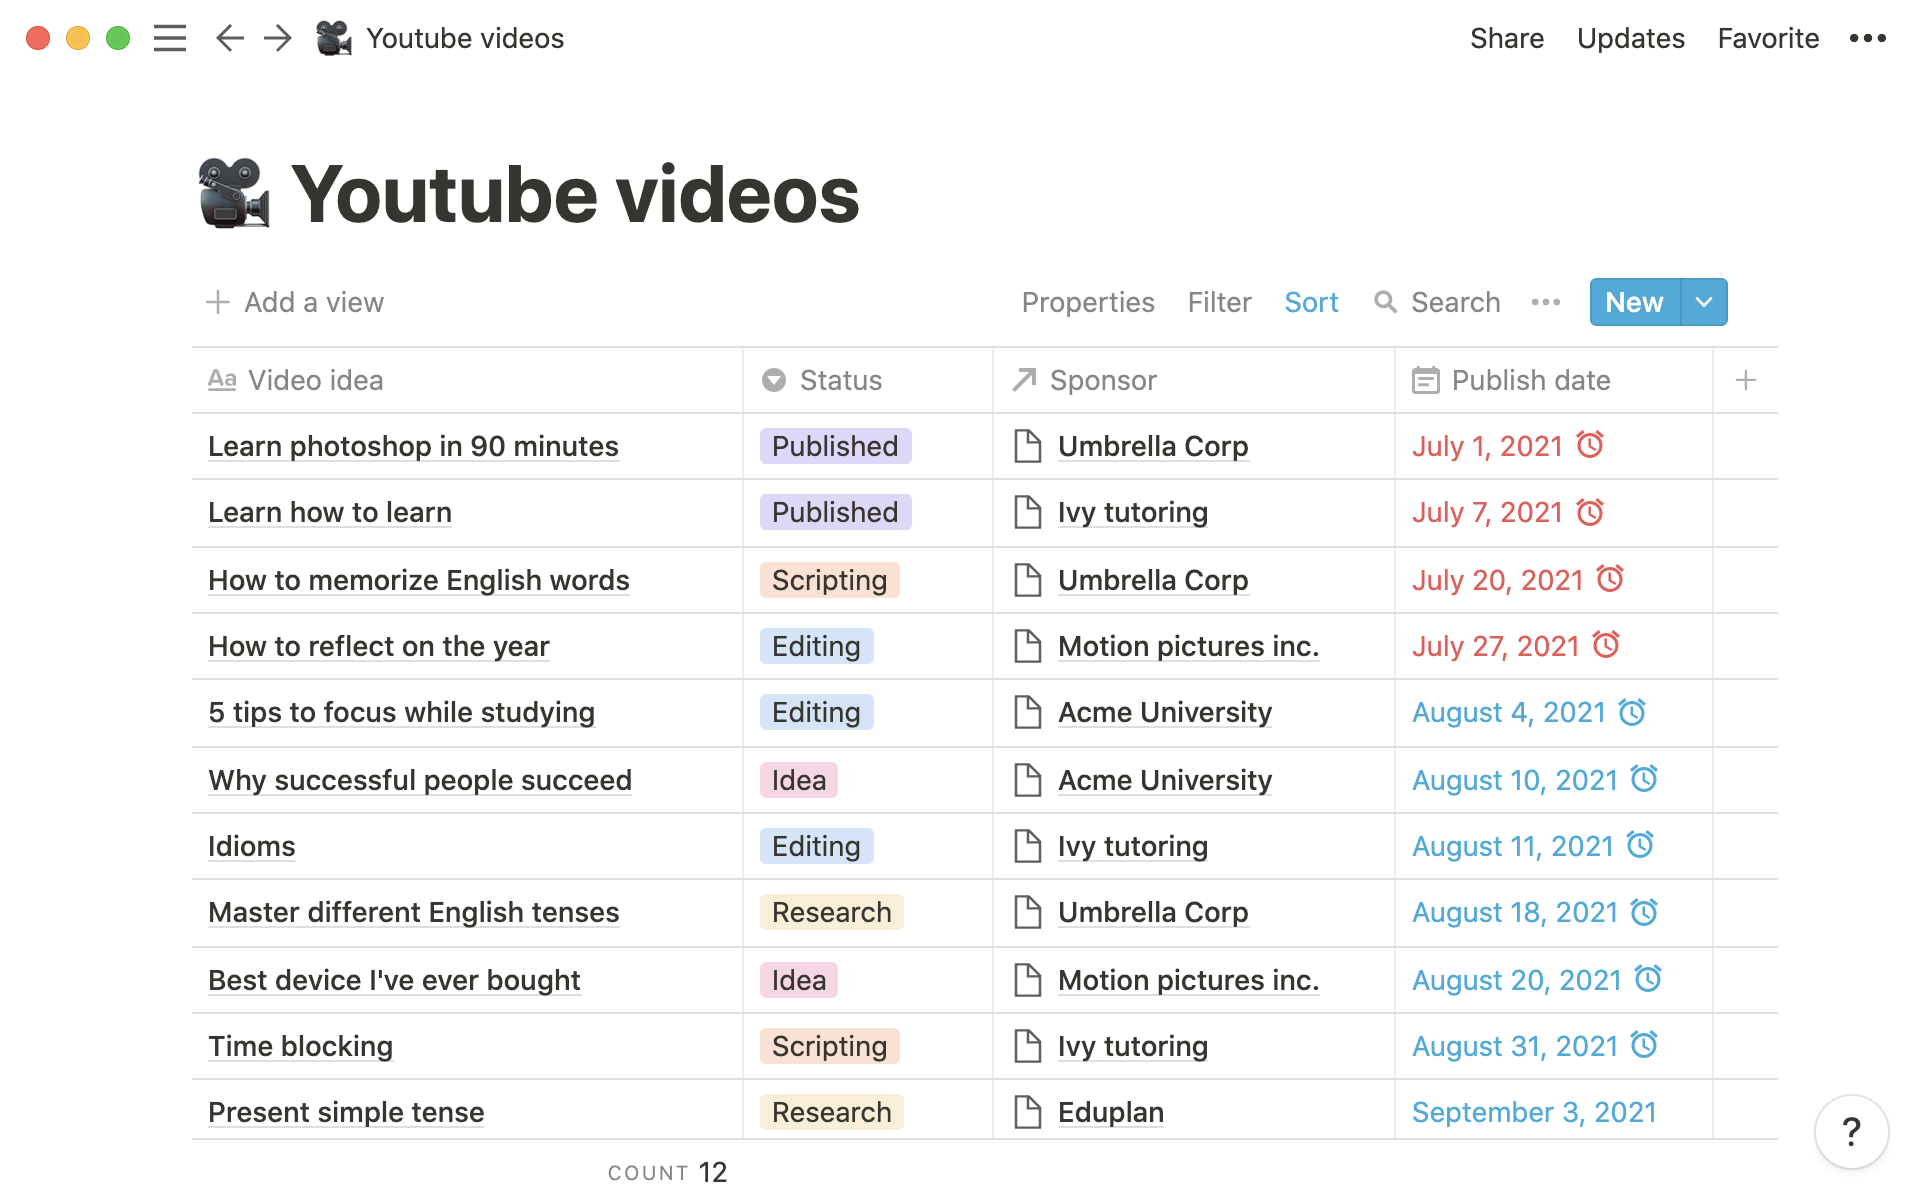 All video info — script, sponsor, status, deadline — is kept in the same database.